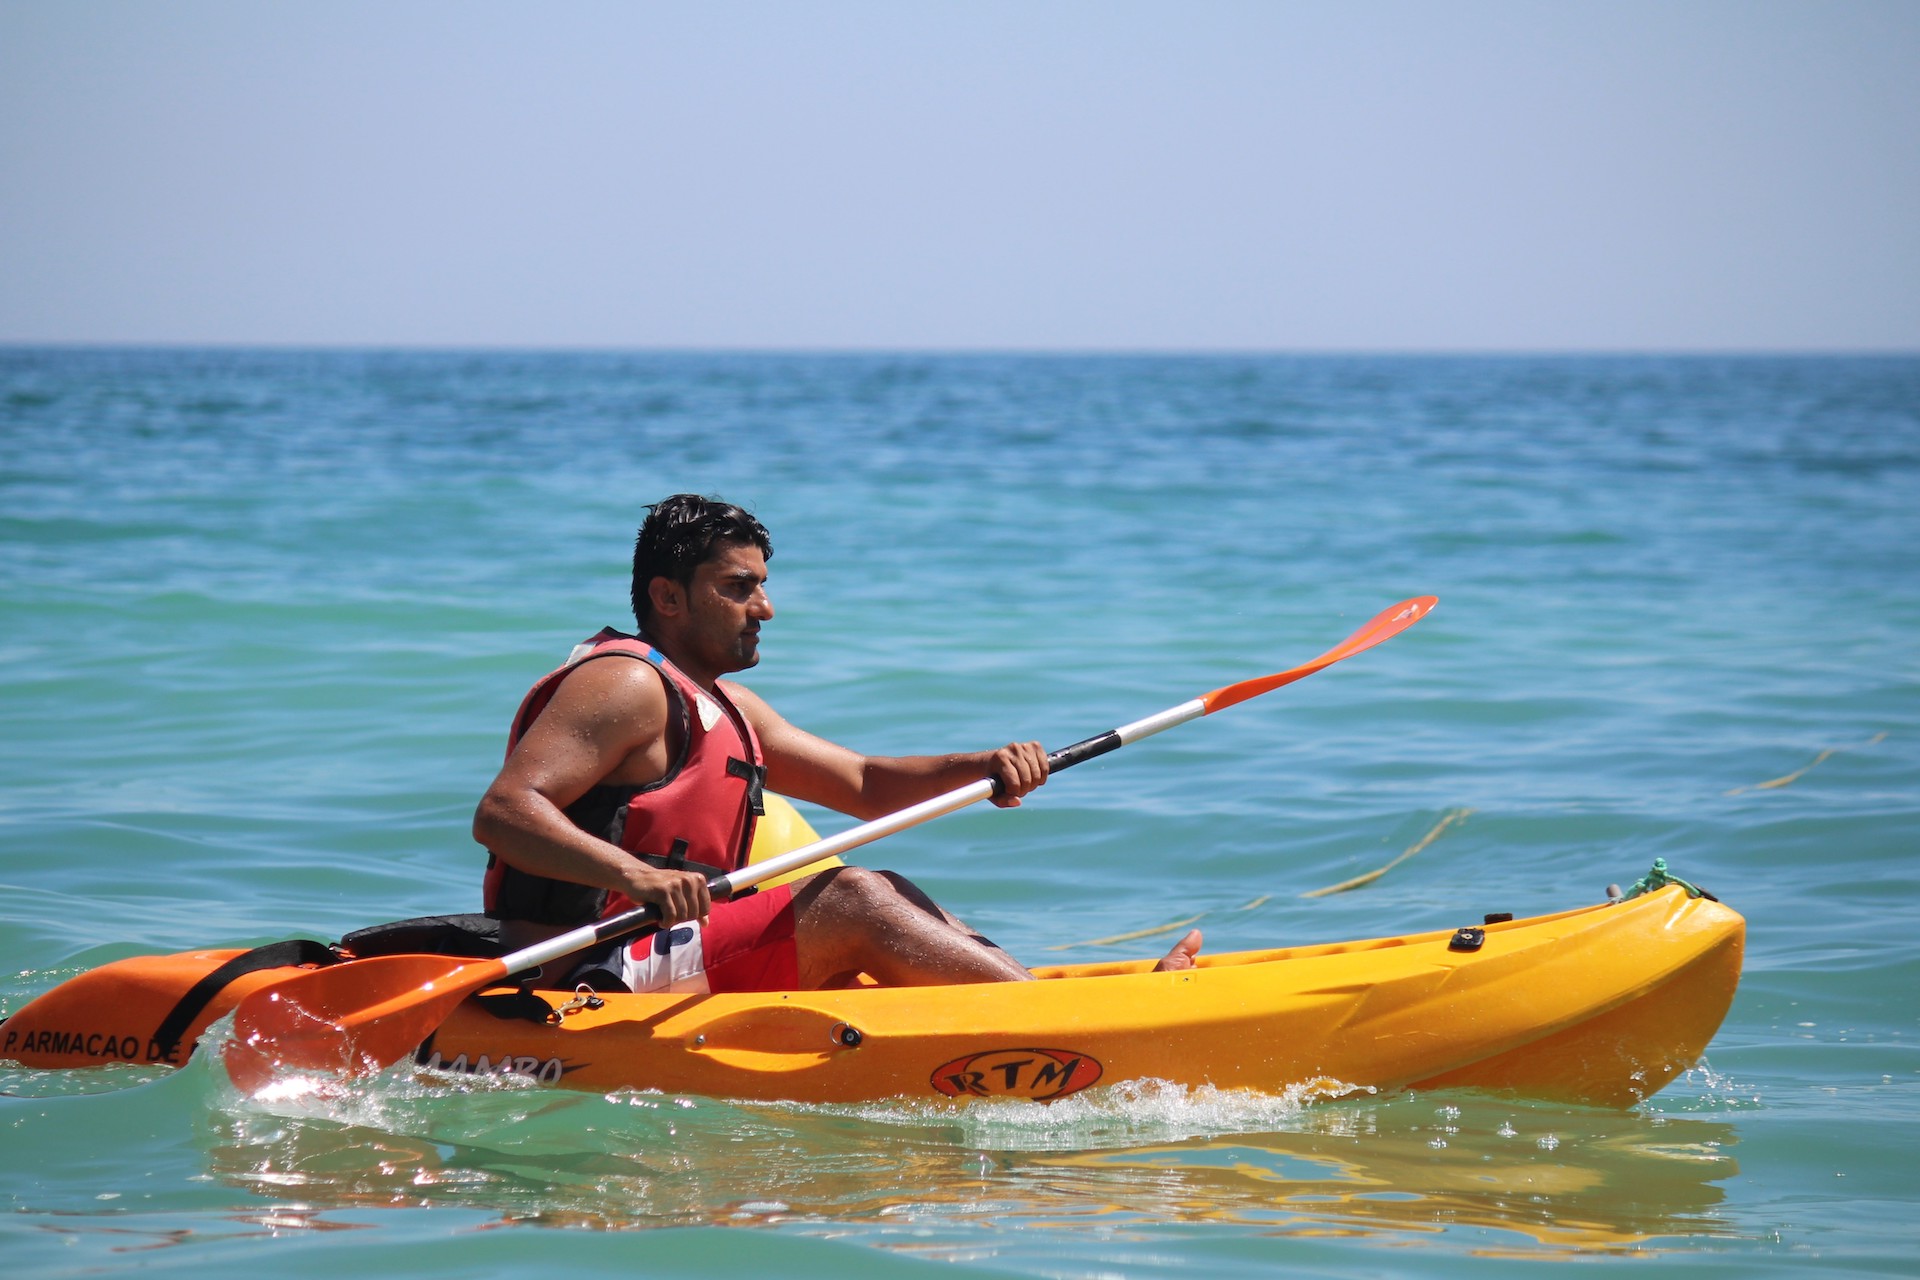 Kayaking in Algarve